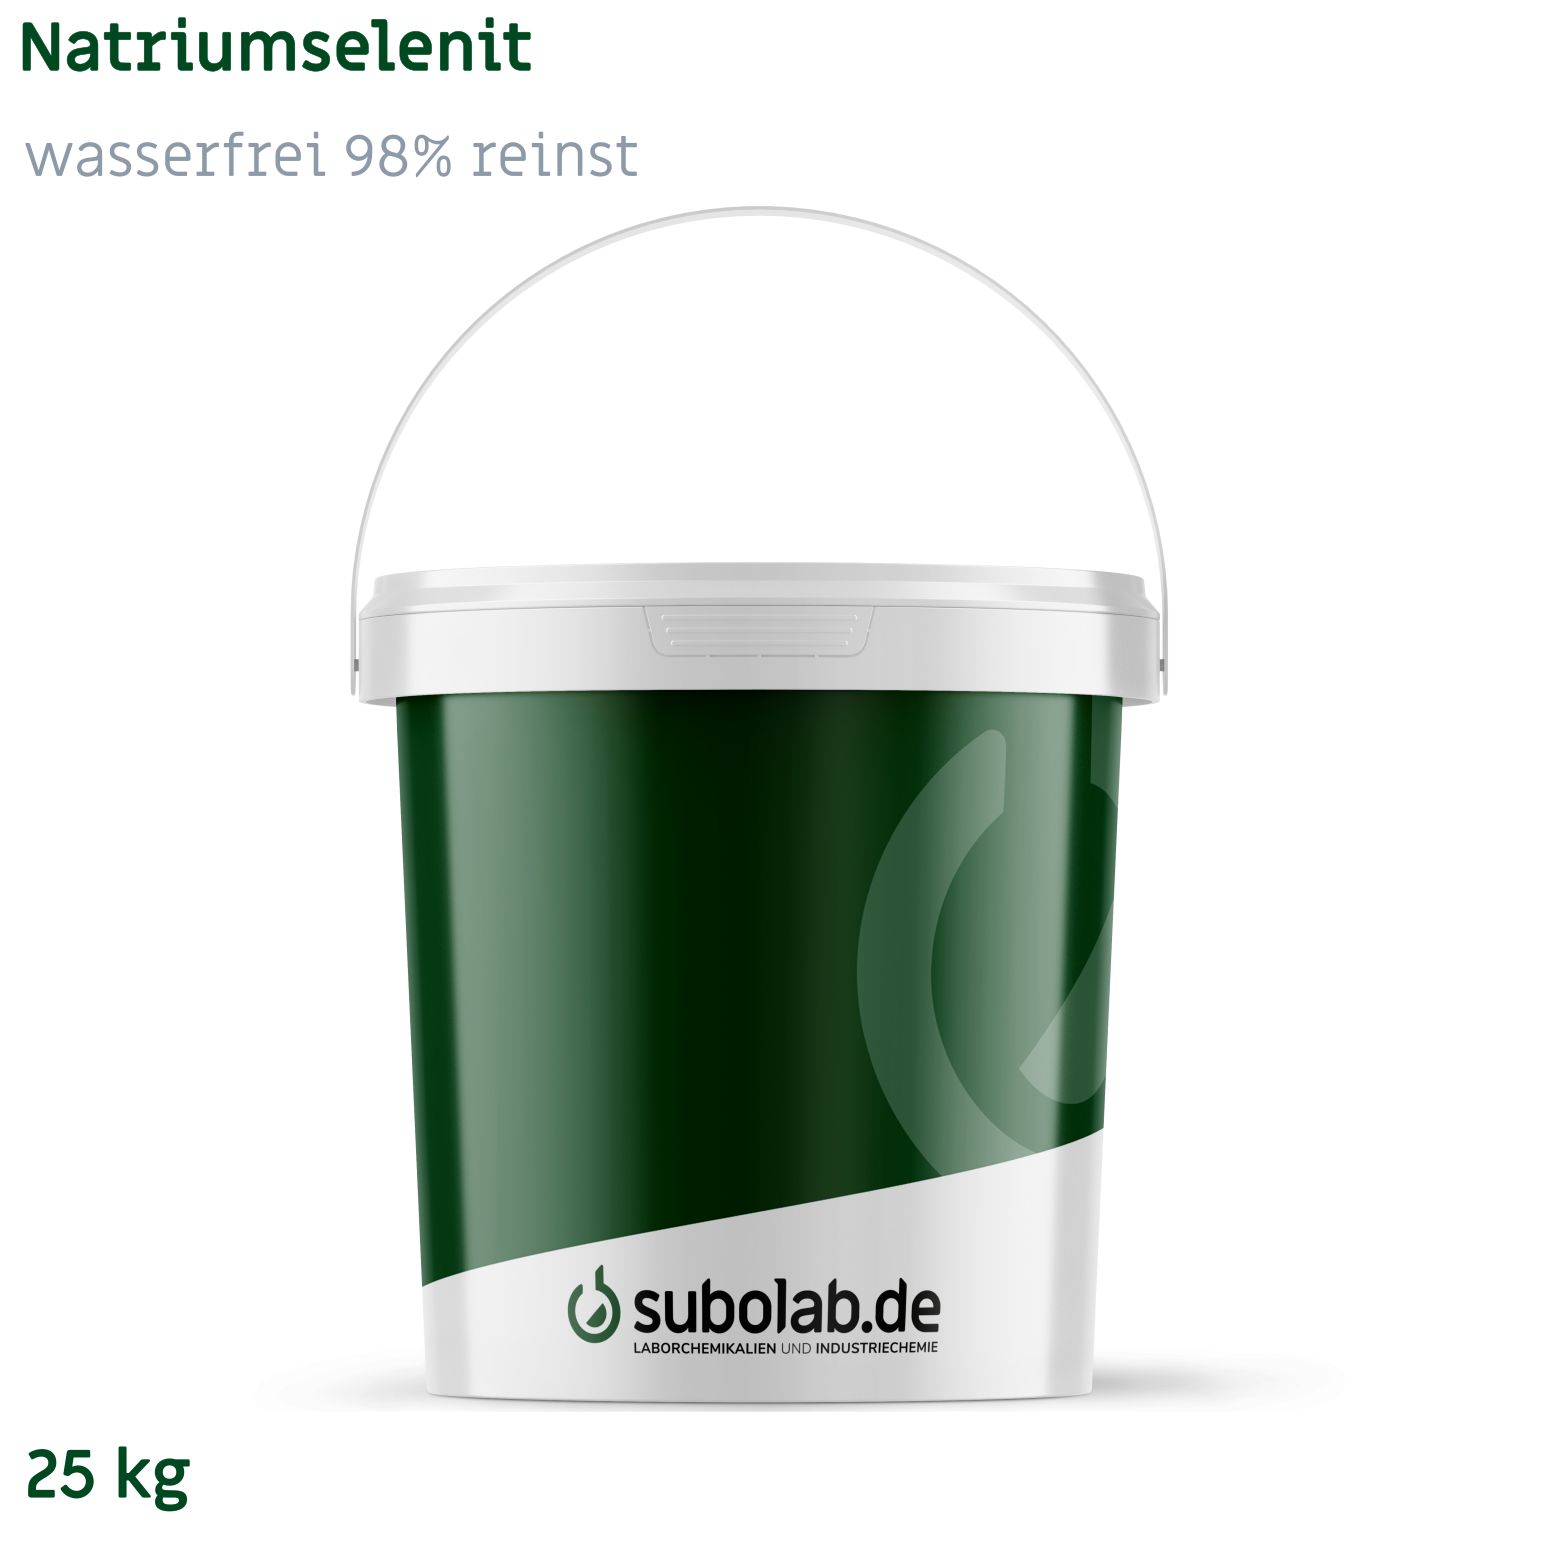 Bild von Natriumselenit - wasserfrei 98% reinst (25 kg)